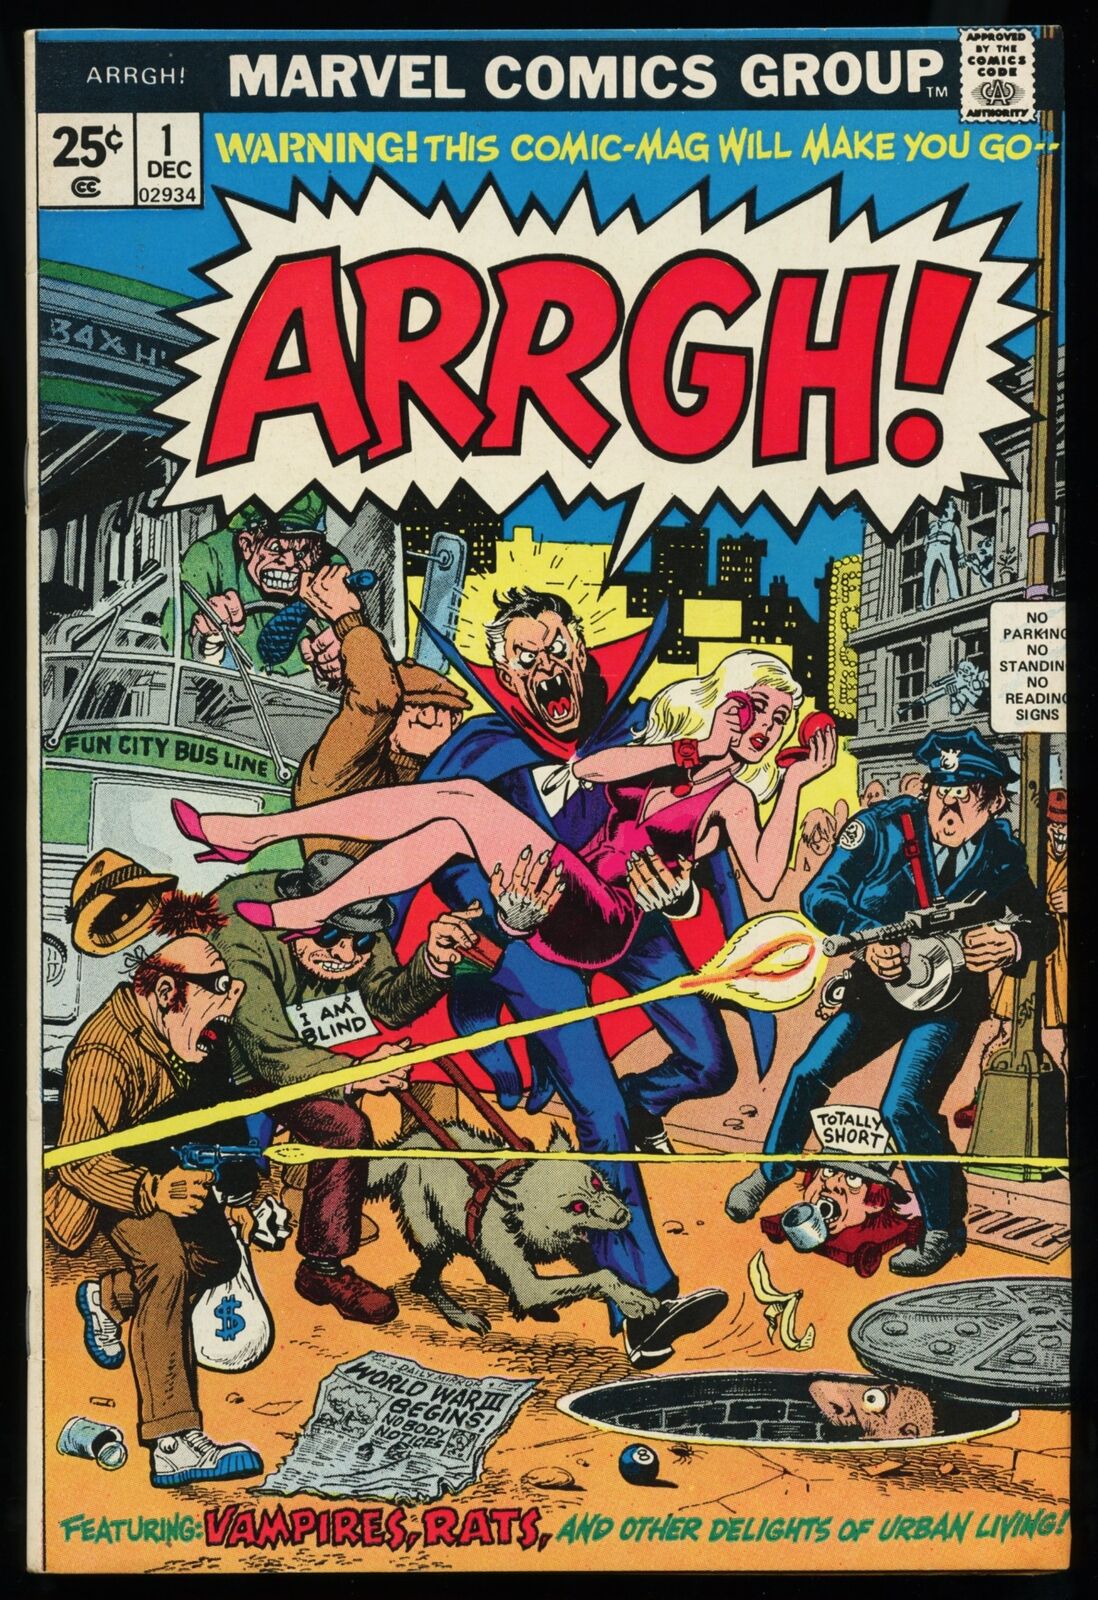 ARRGH #1 ~ Marvel Comics